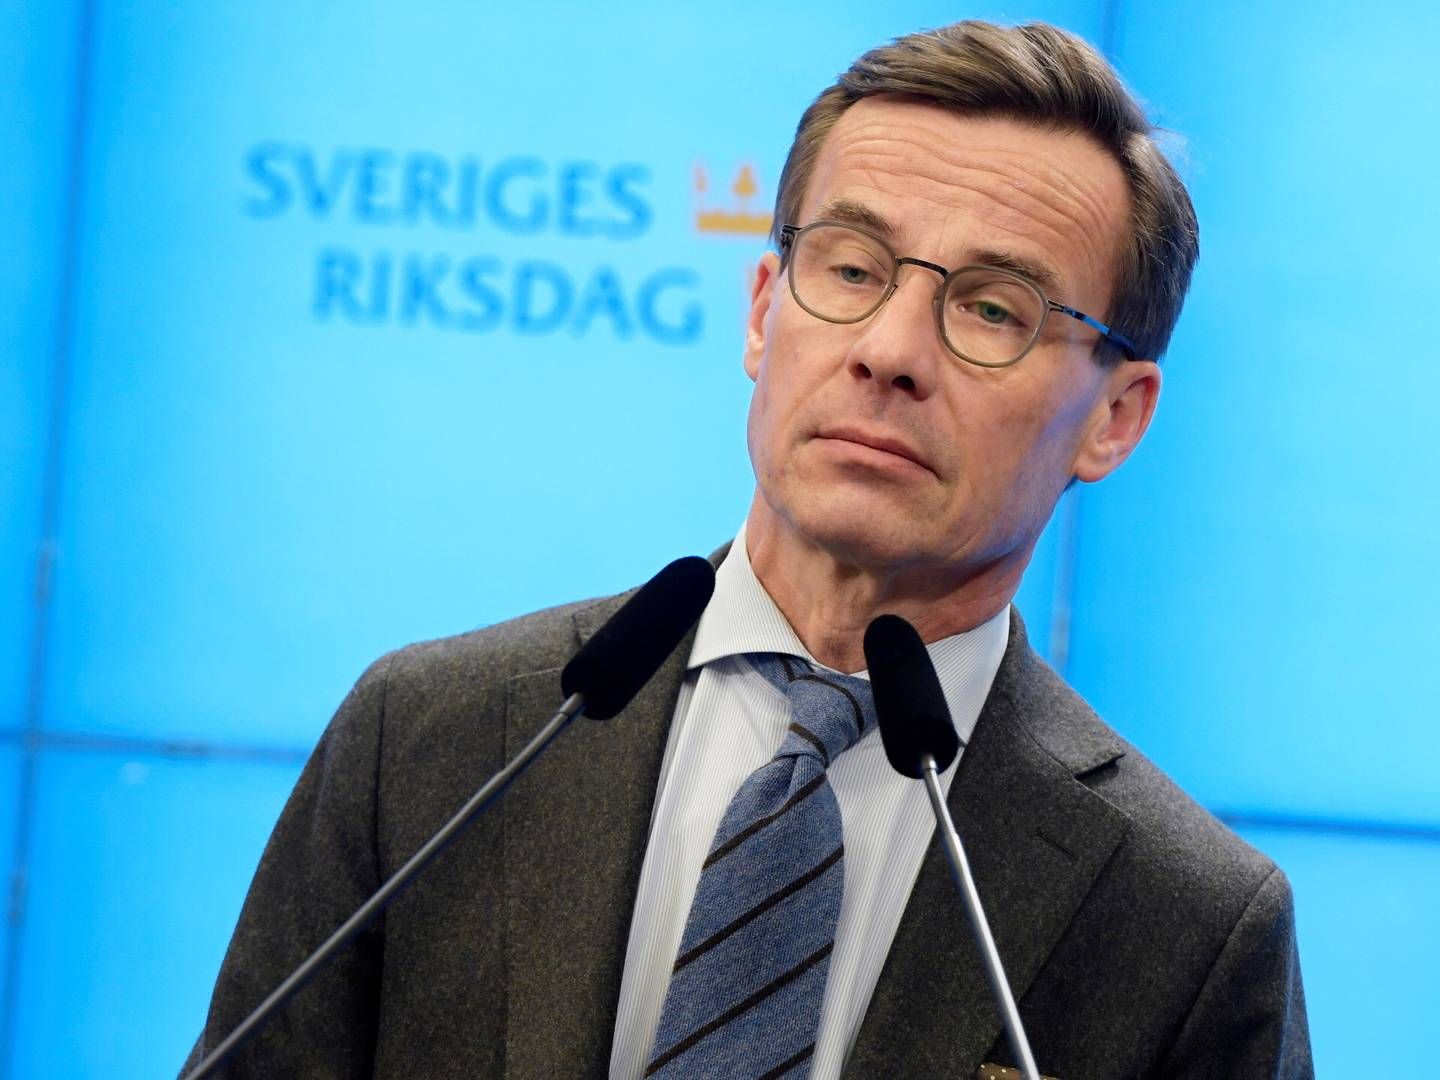 Den politiske leder for det svenske parti Moderaterna, Ulf Kristersson, | Foto: TT NEWS AGENCY/REUTERS / X02350